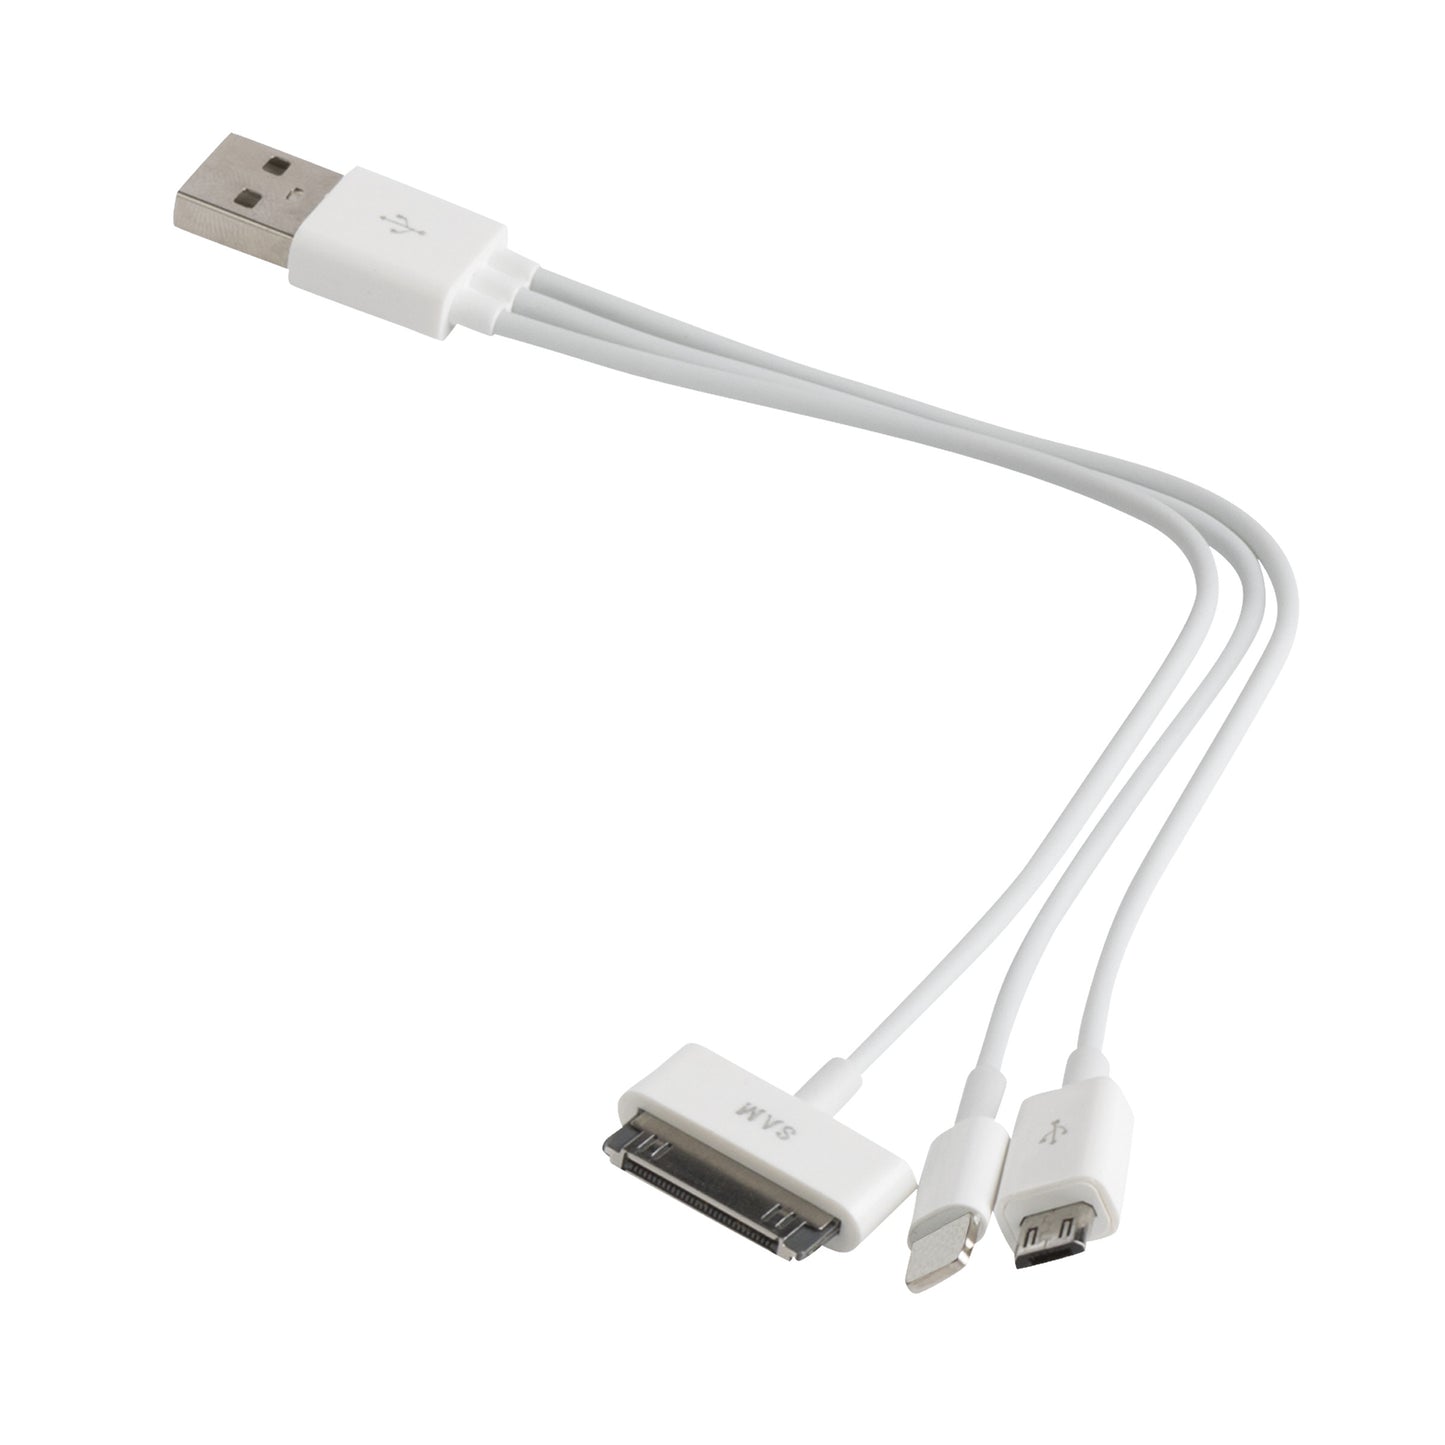 USB Ladekabel mit 3 verschiedenen Anschlüssen-3-Way Charger USB Ladekabel